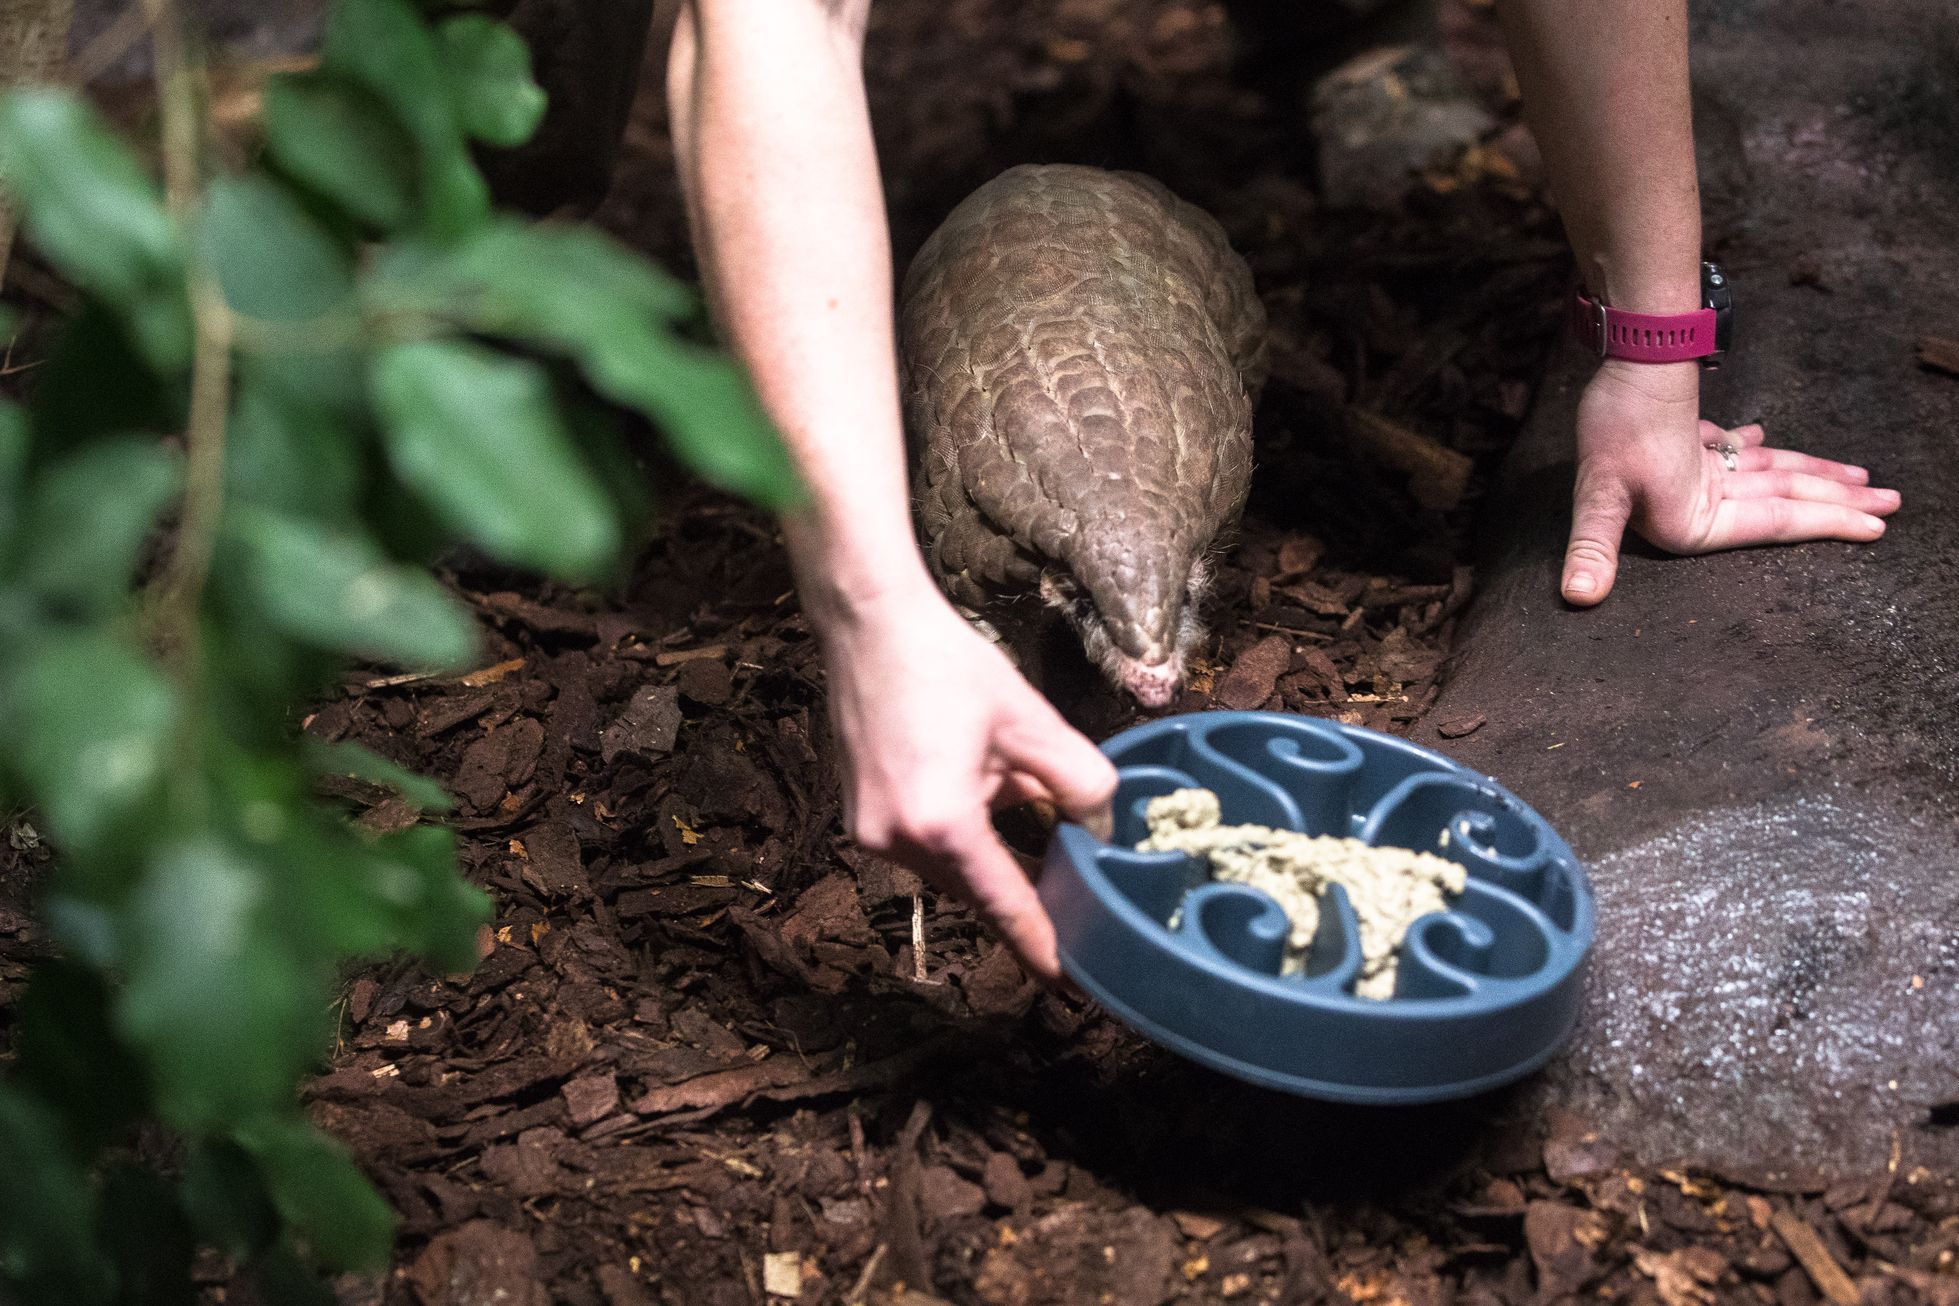 Regardez le zoo de Taïwan, qui a donné des coquilles d’arachides à la République tchèque